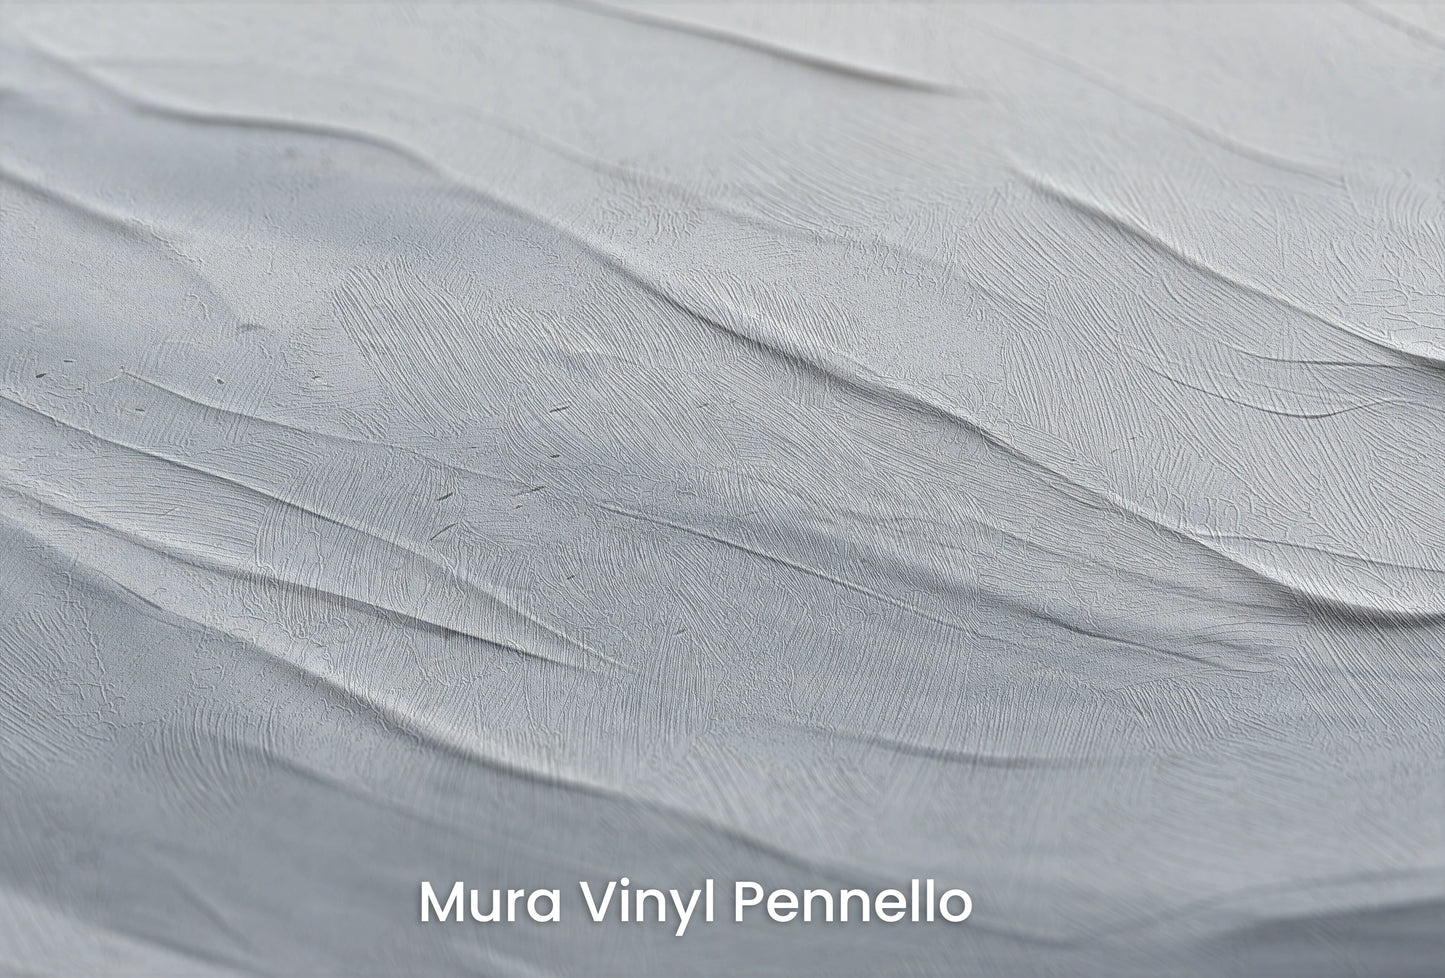 Zbliżenie na artystyczną fototapetę o nazwie Serenity Stratum na podłożu Mura Vinyl Pennello - faktura pociągnięć pędzla malarskiego.